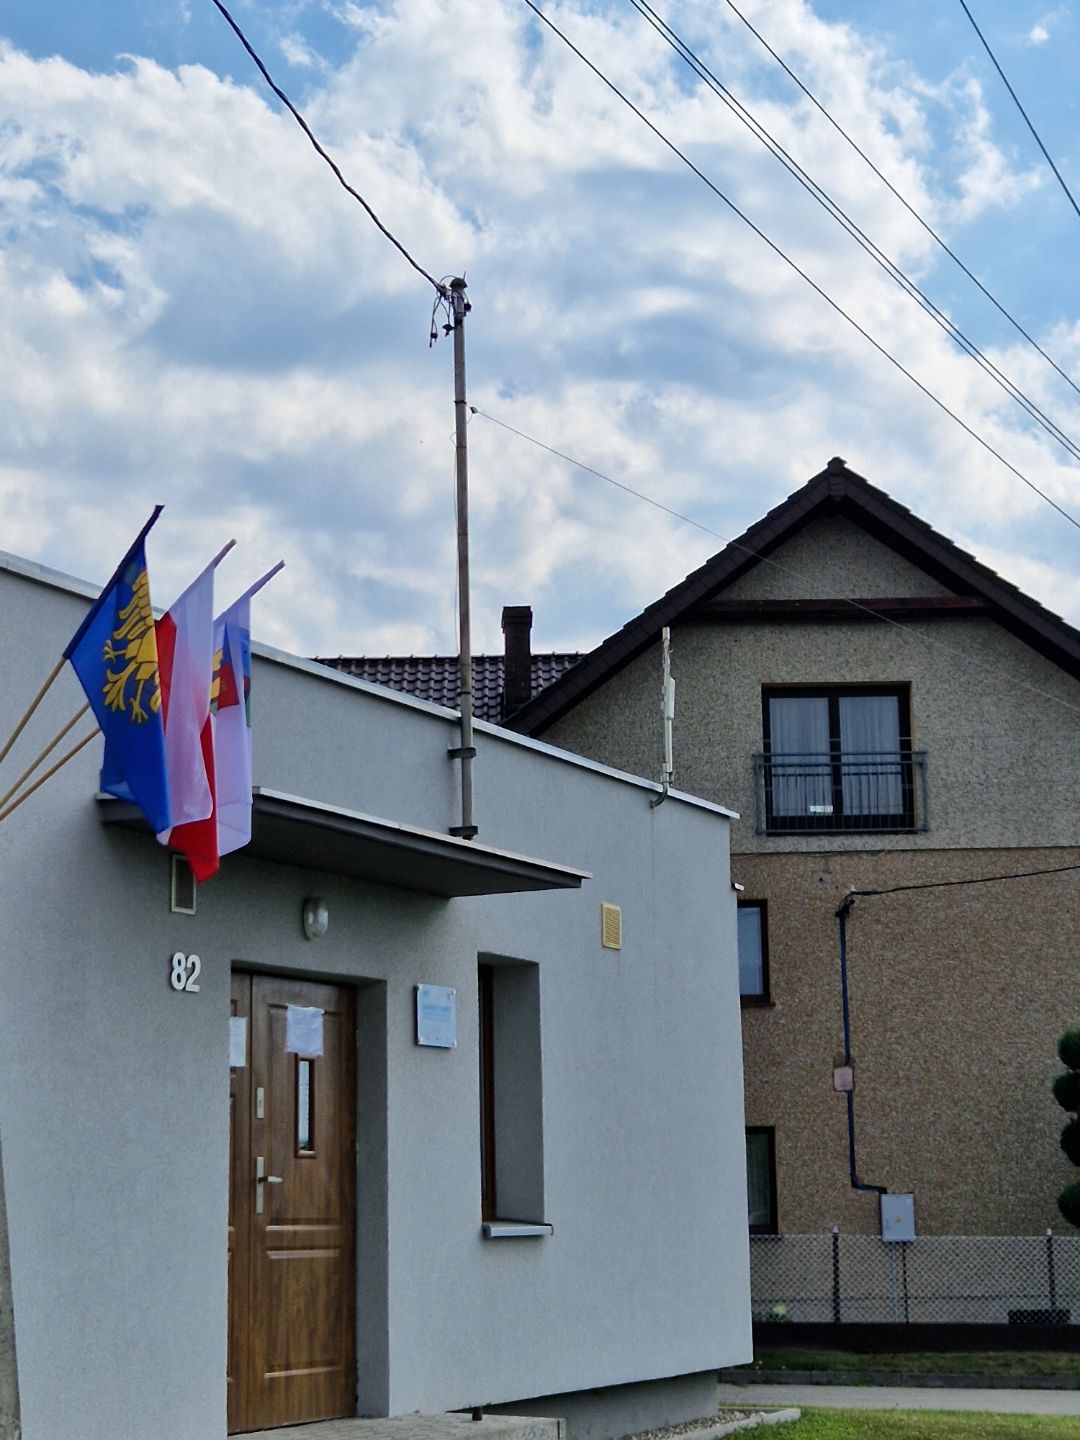 Krzyżanowice flagi wywiesiły na budynku gminnym przy ul. Głównej 82 (fot. UG)